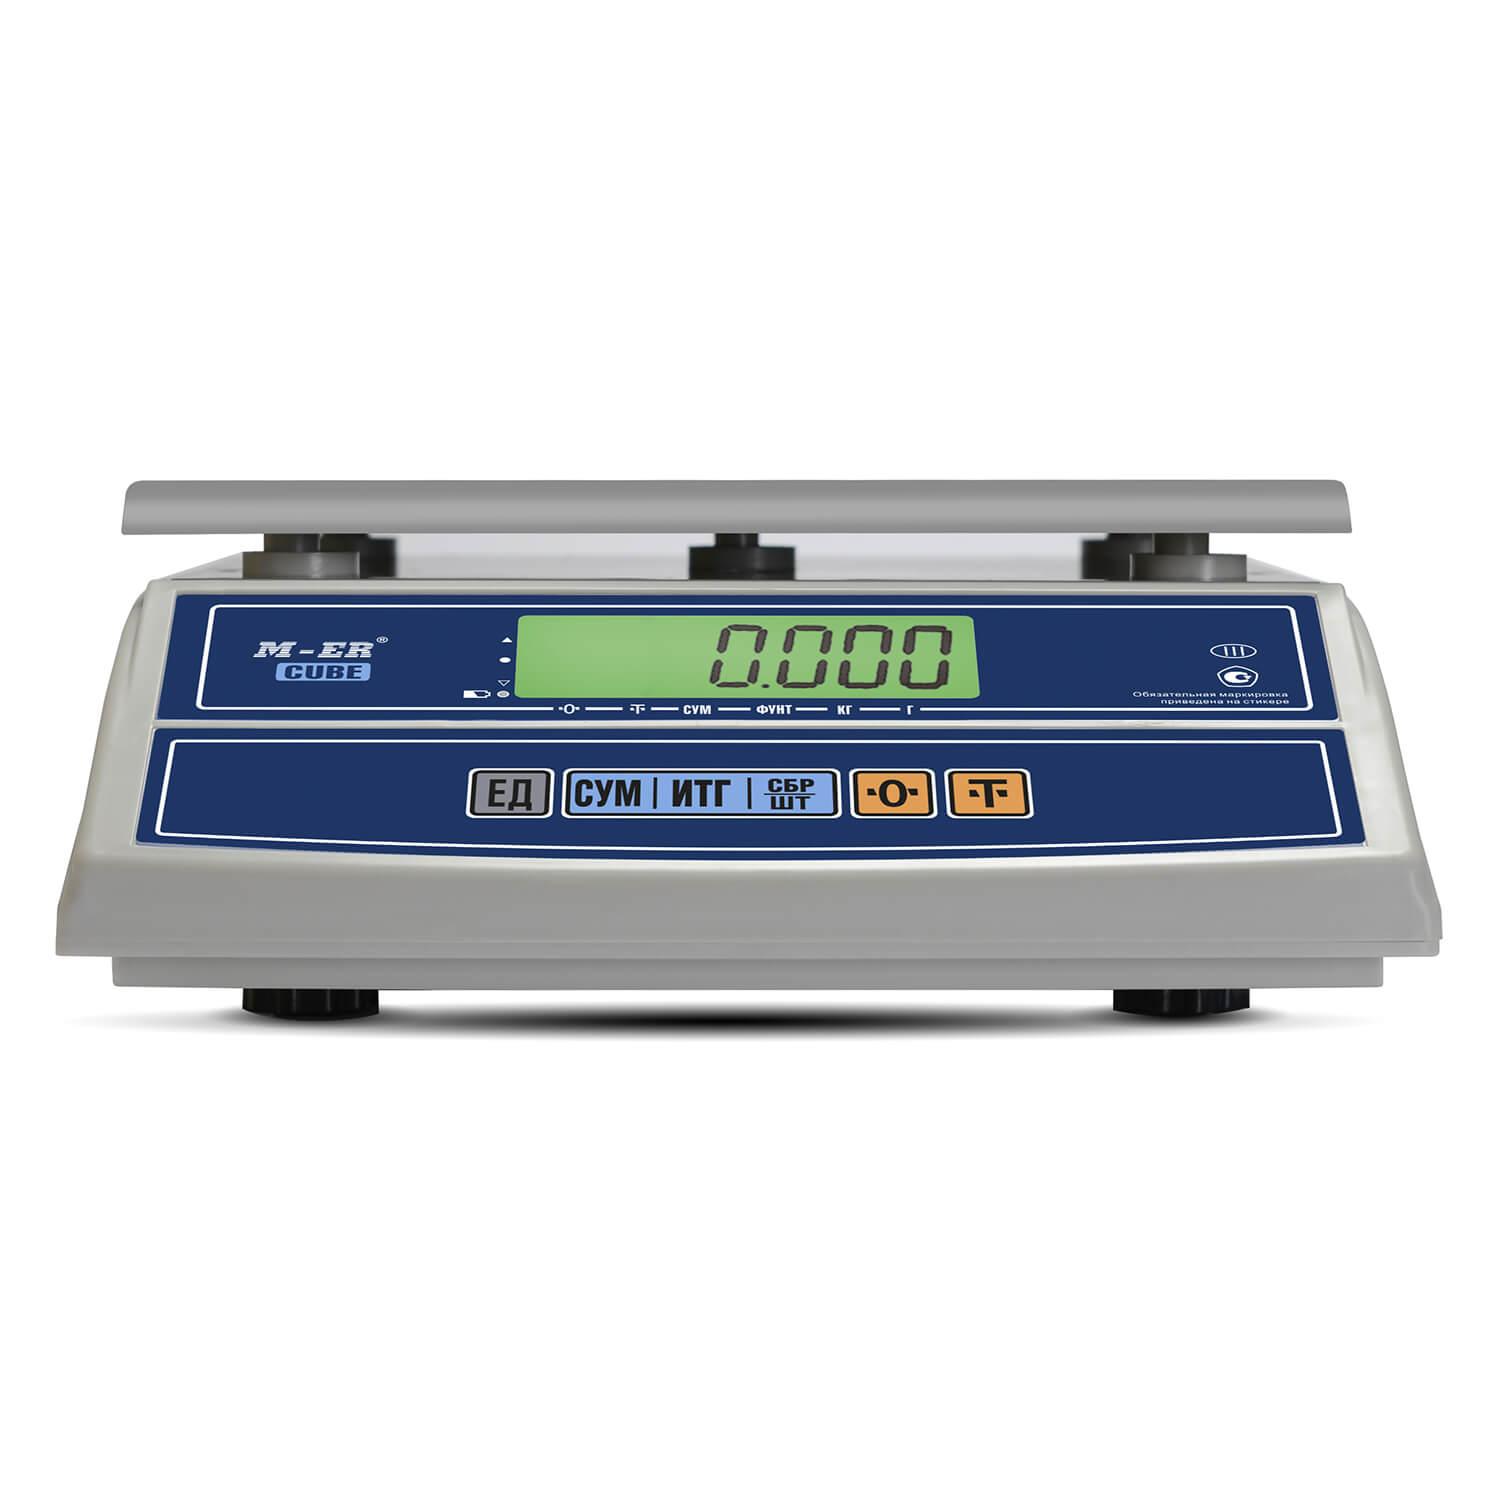 Фасовочные настольные весы M-ER 326 AFL-6.1 "Cube" LCD (3055)